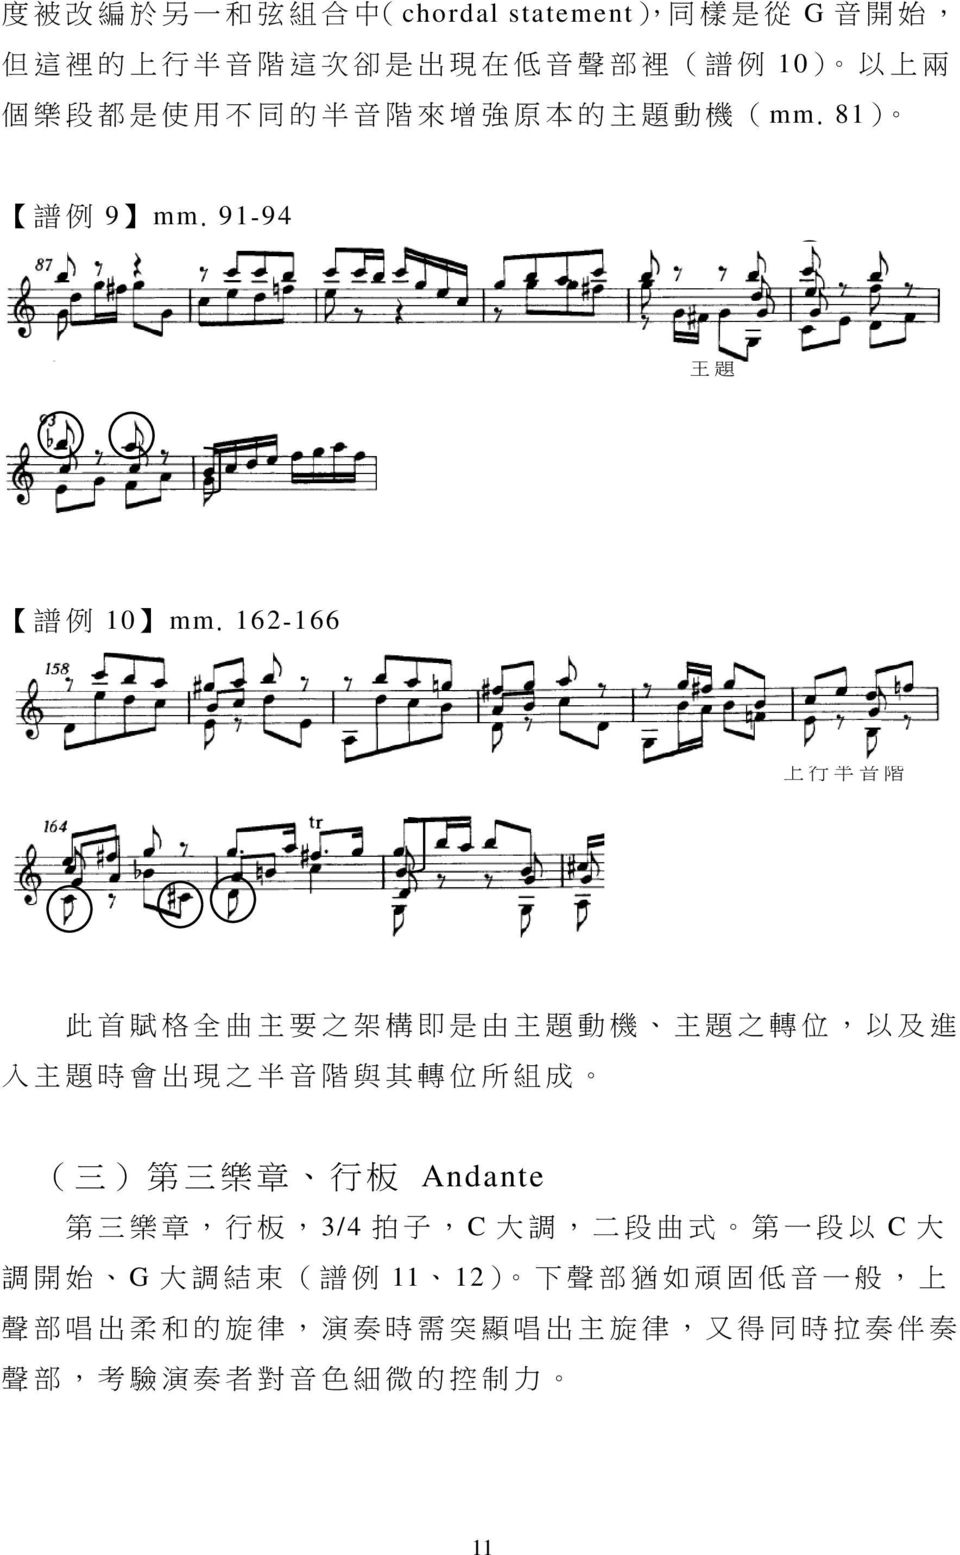 162-166 主 題 上 行 半 音 階 此 首 賦 格 全 曲 主 要 之 架 構 即 是 由 主 題 動 機 主 題 之 轉 位, 以 及 進 入 主 題 時 會 出 現 之 半 音 階 與 其 轉 位 所 組 成 ( 三 ) 第 三 樂 章 行 板 Andante